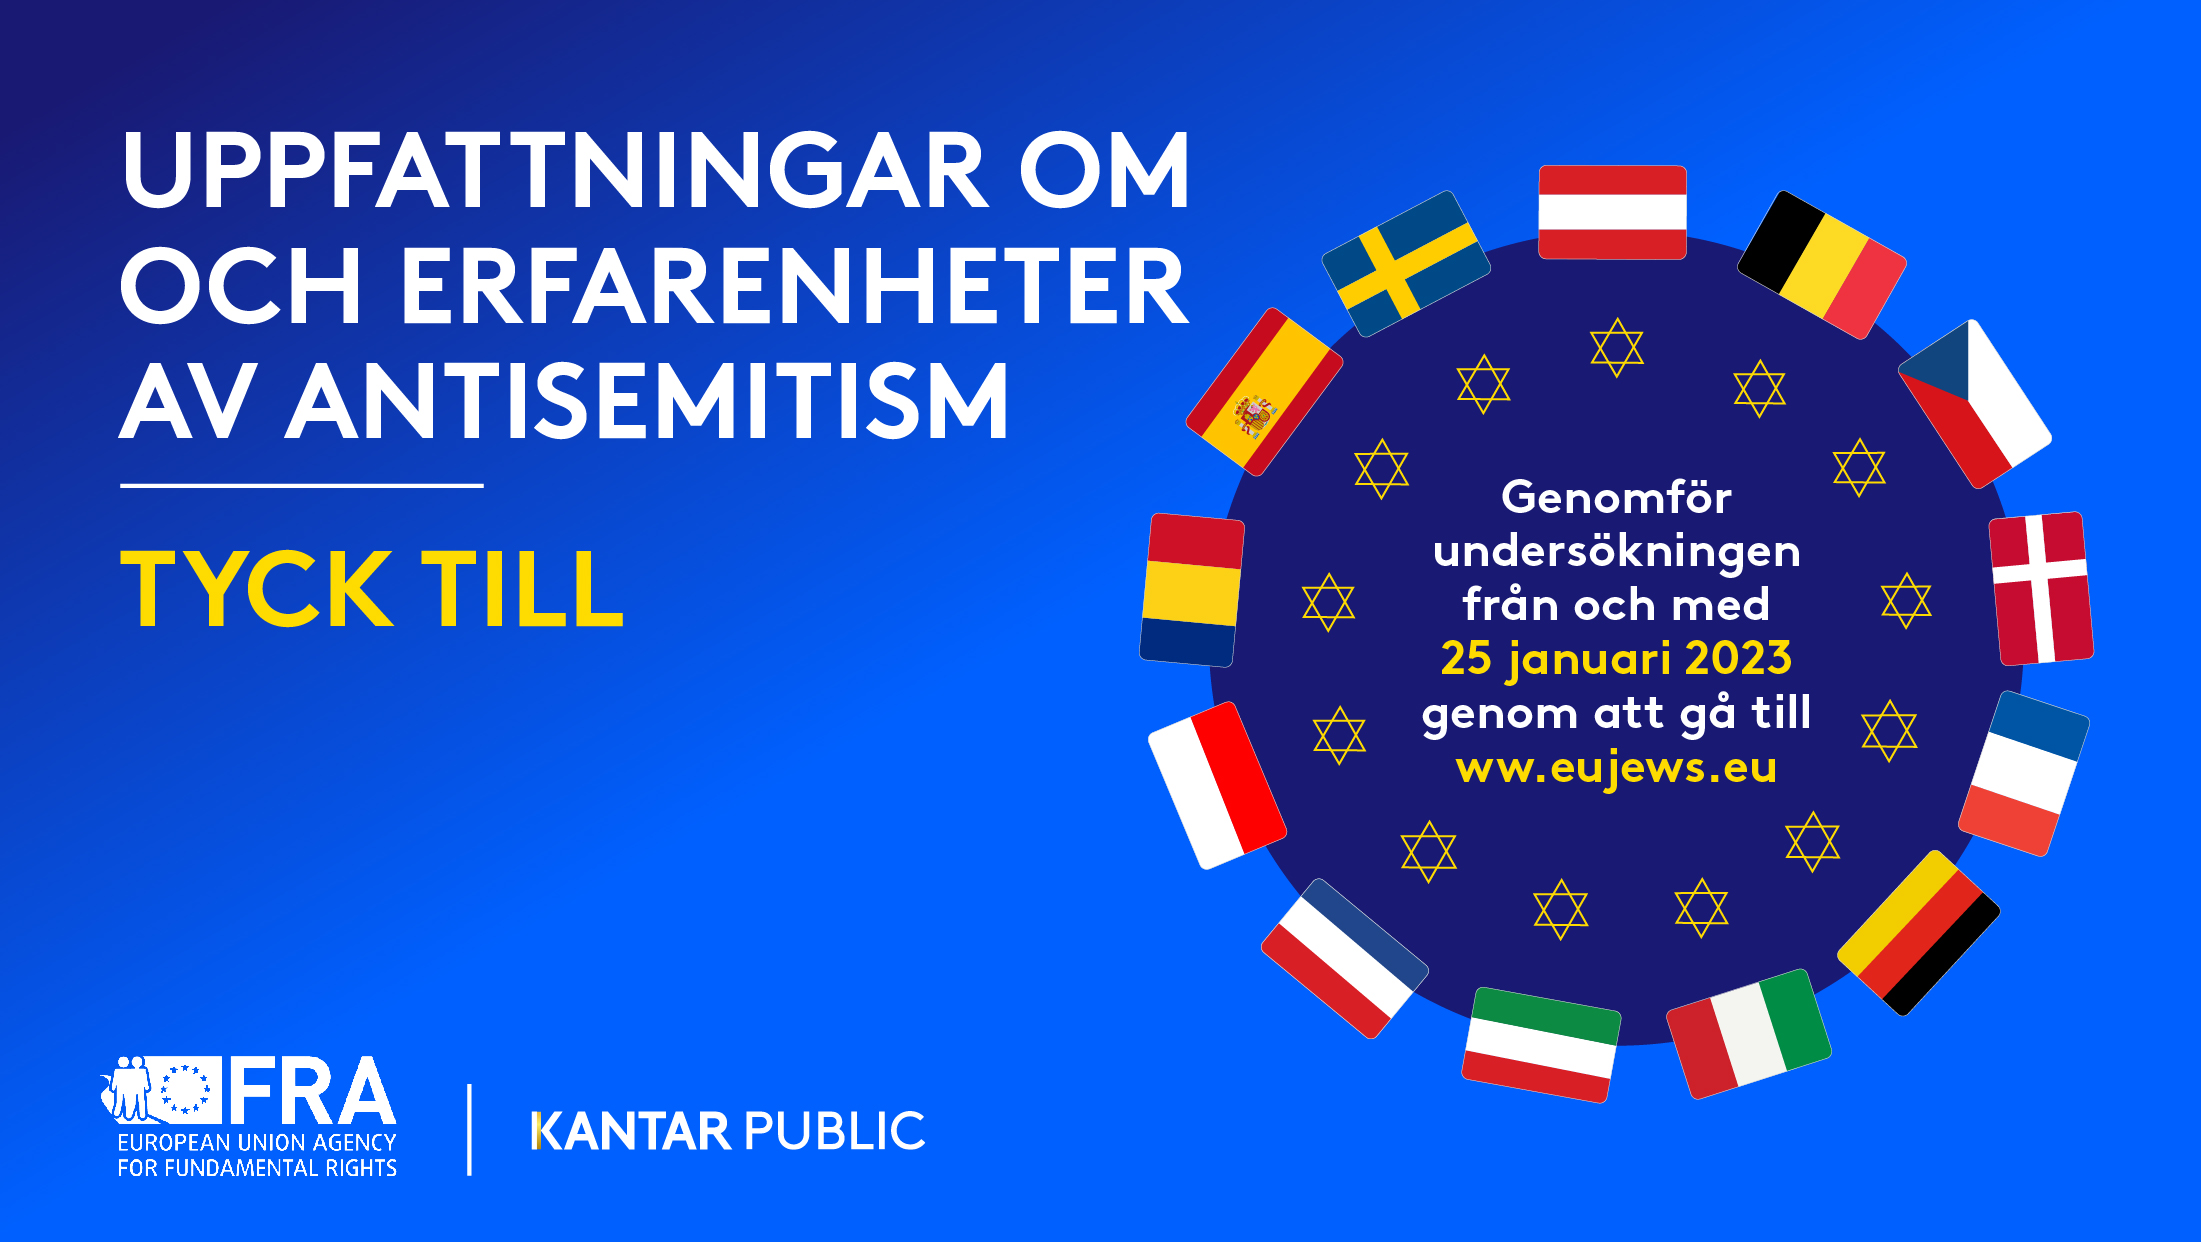 Europeisk enkät om antisemitism förlängs till 26 april